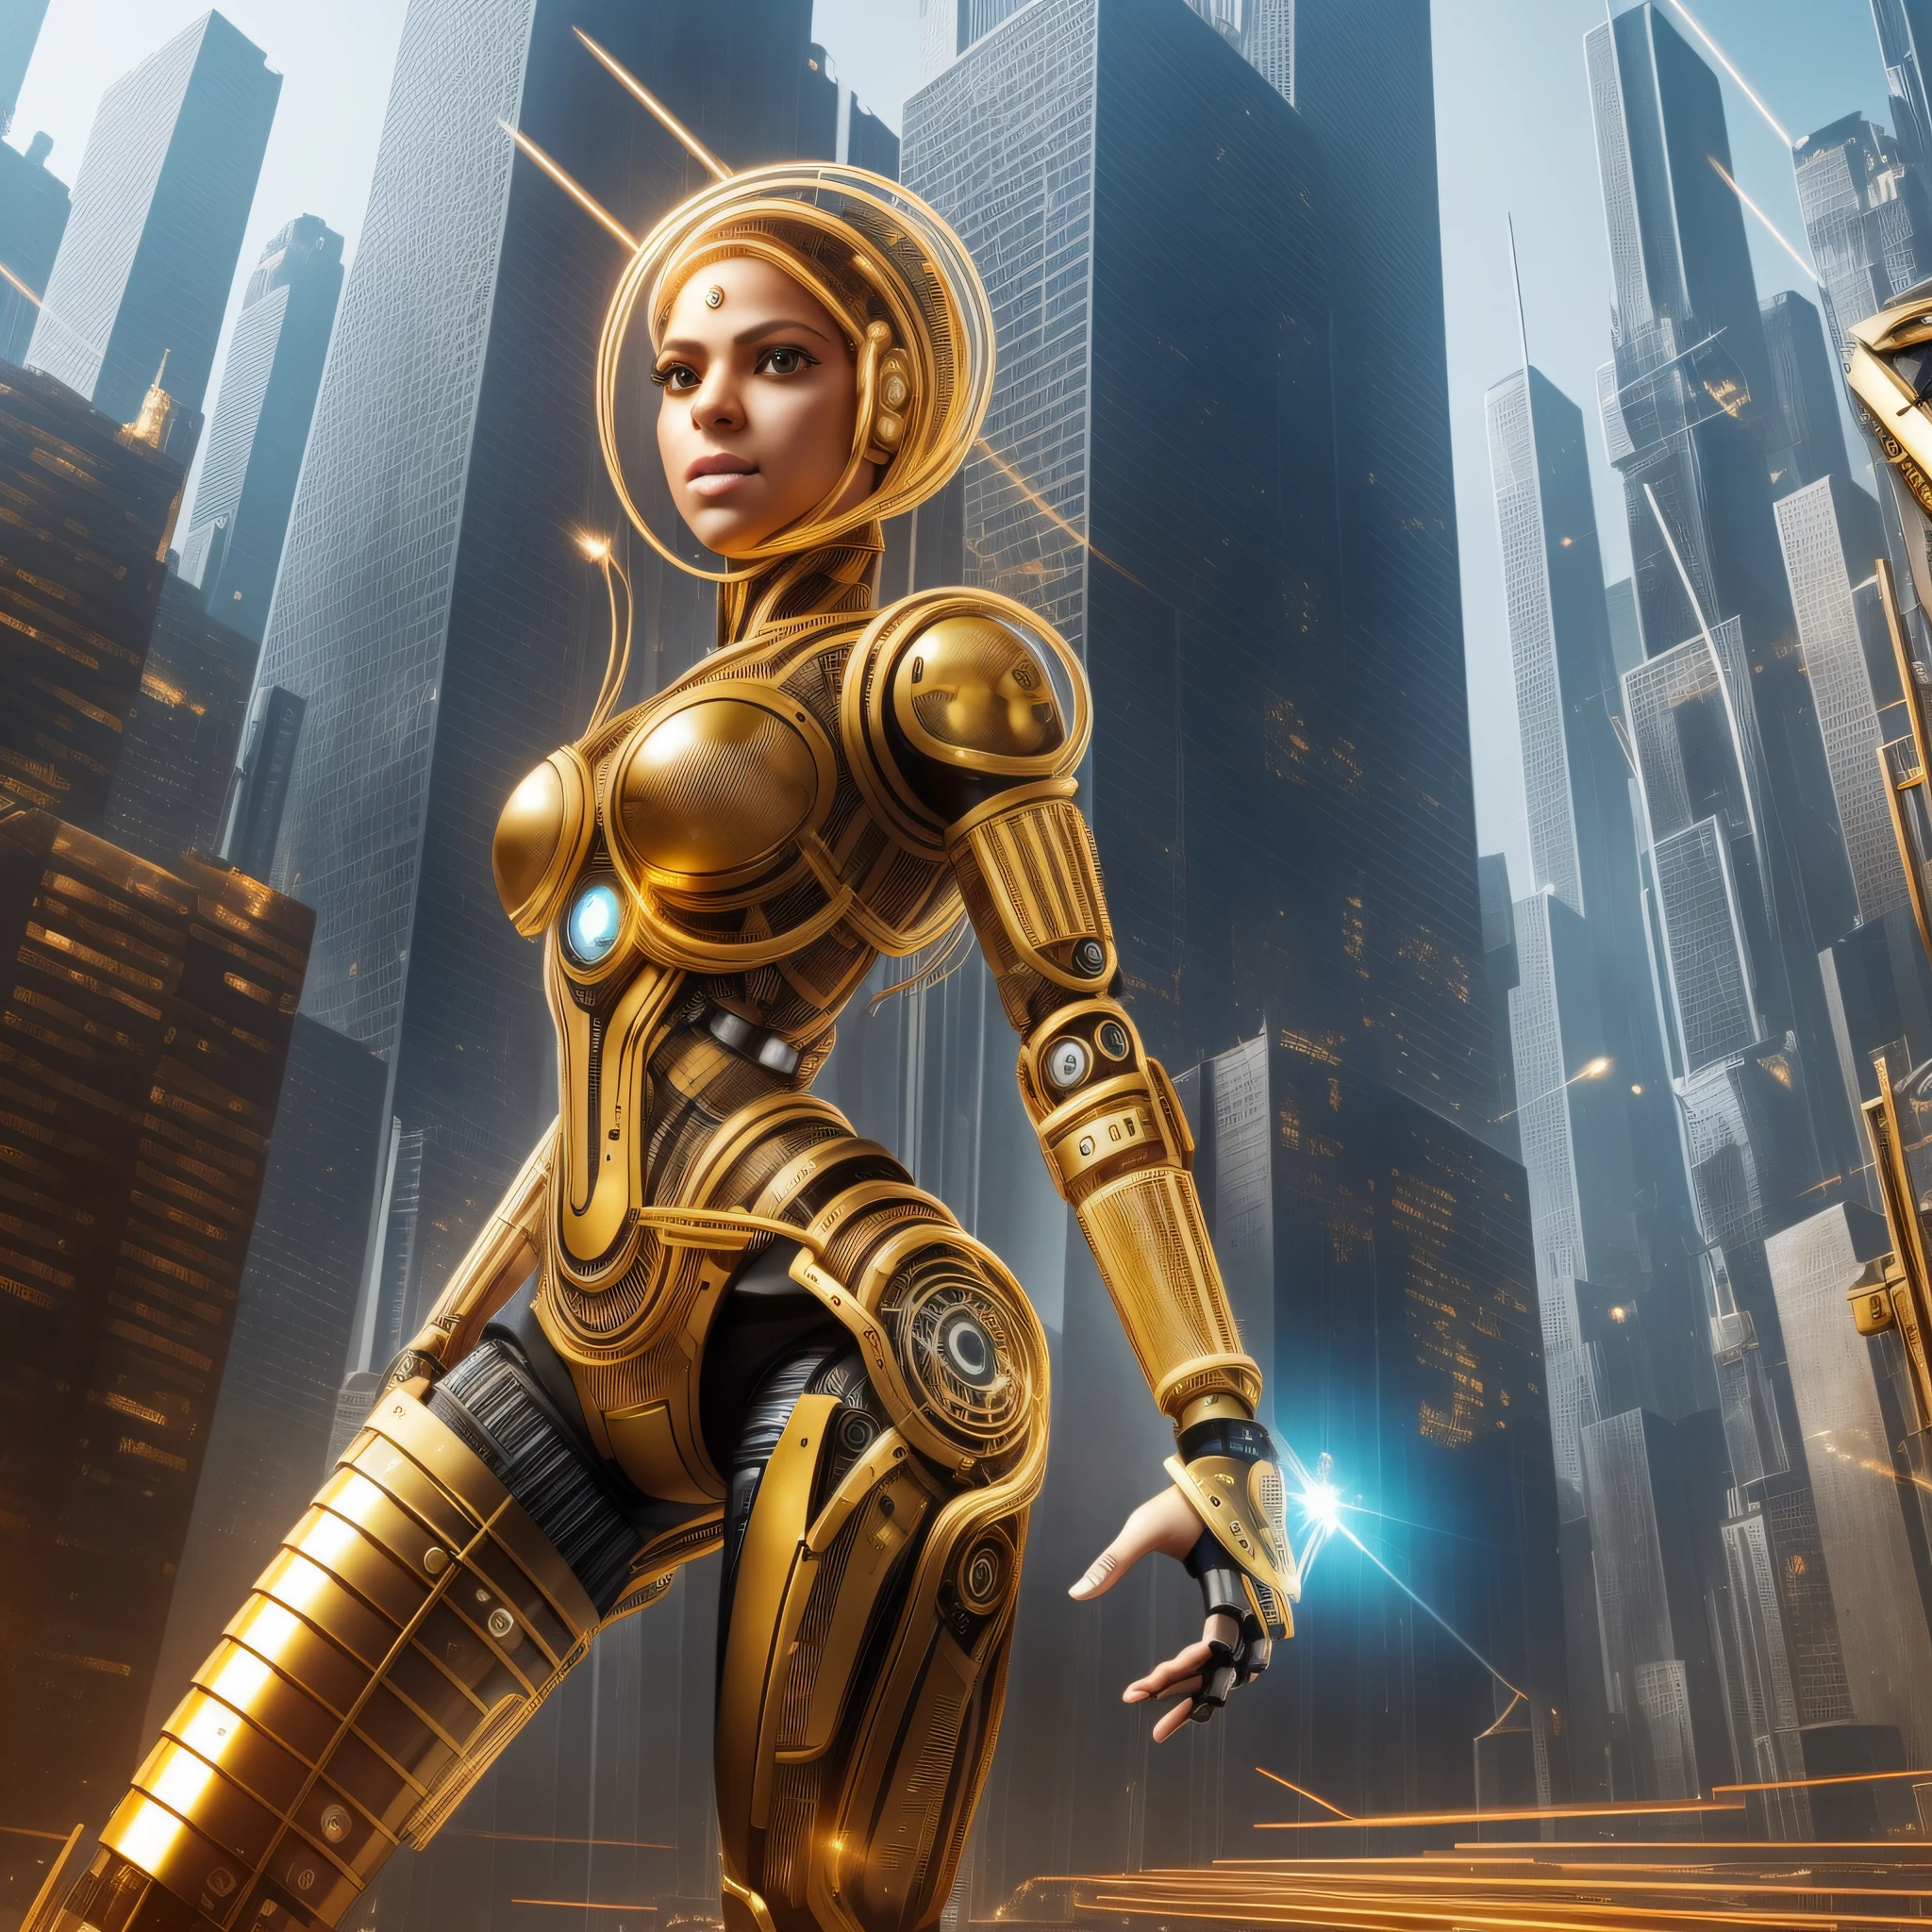 1 機器人女人, 夏奇拉的臉, 機身附有金屬部件, 機器人手臂和腿, 身體旁的金線和齒輪, 臉上有微晶片, 未来城市背景,